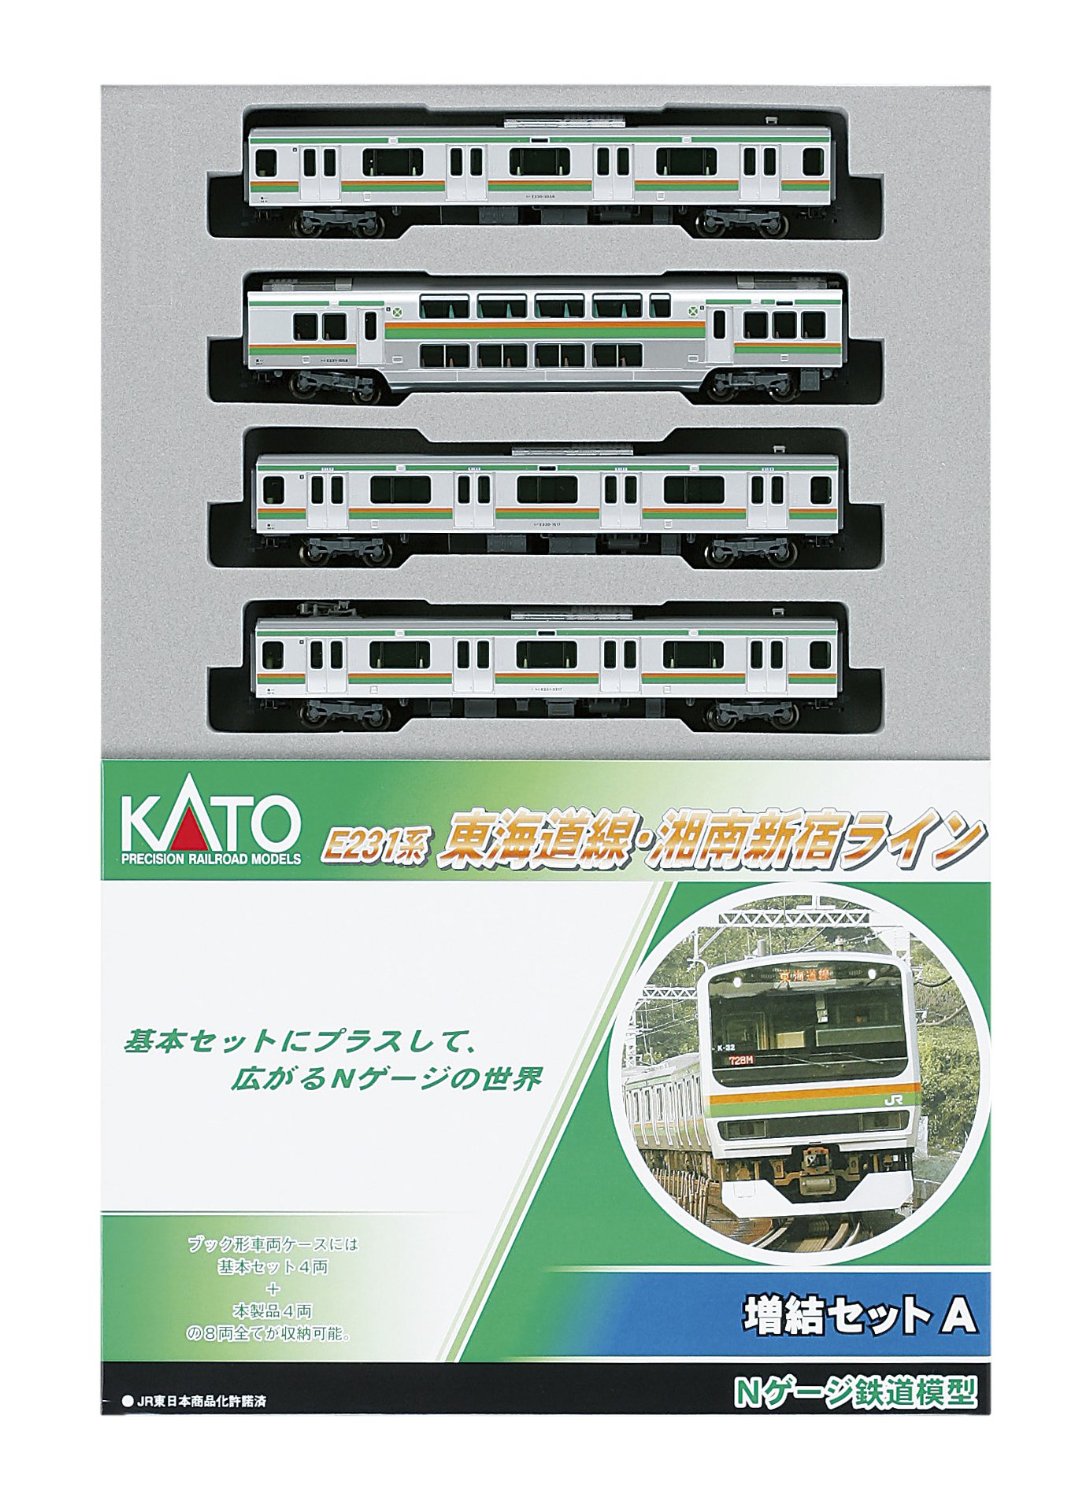 10-595 Series E231 Tokaido / Shonan-Shinjuku Line Add-On 4 Car